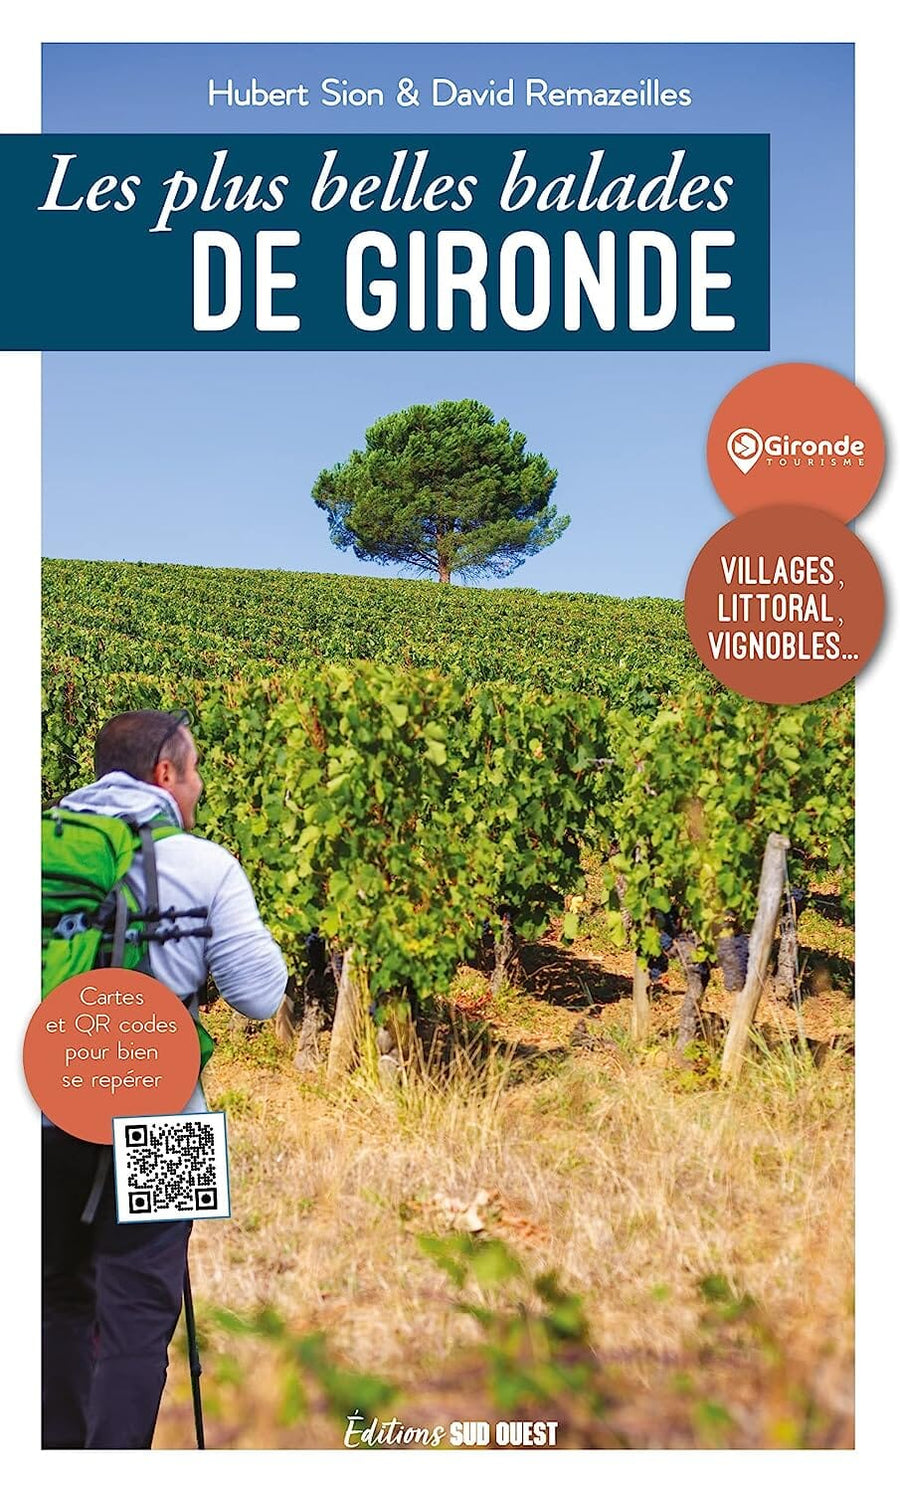 Guide de balades - Les plus belles balades de Gironde | Sud Ouest guide de randonnée Sud Ouest 